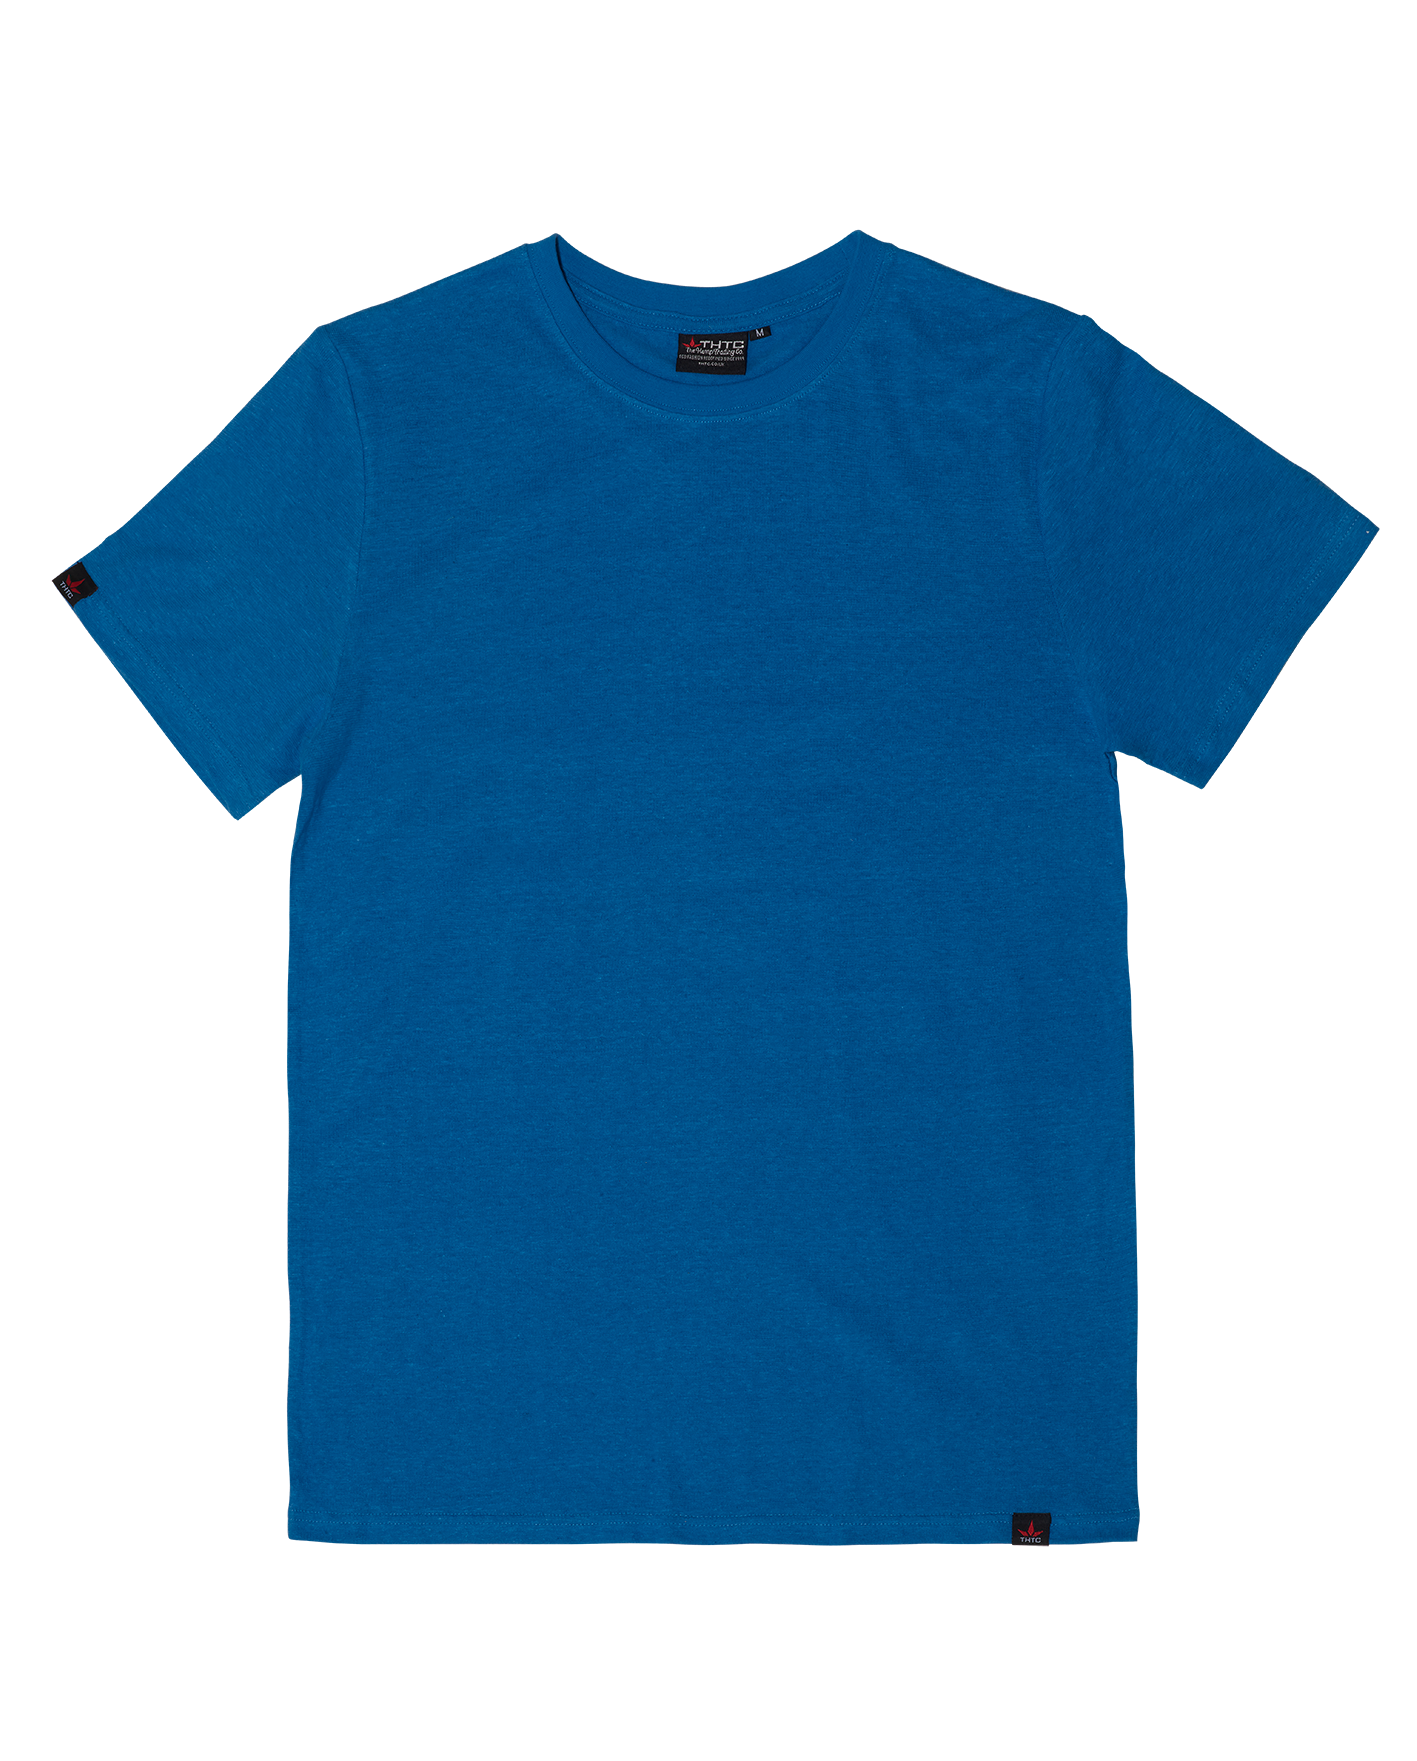 Hemp Originals T-Shirt - Blue